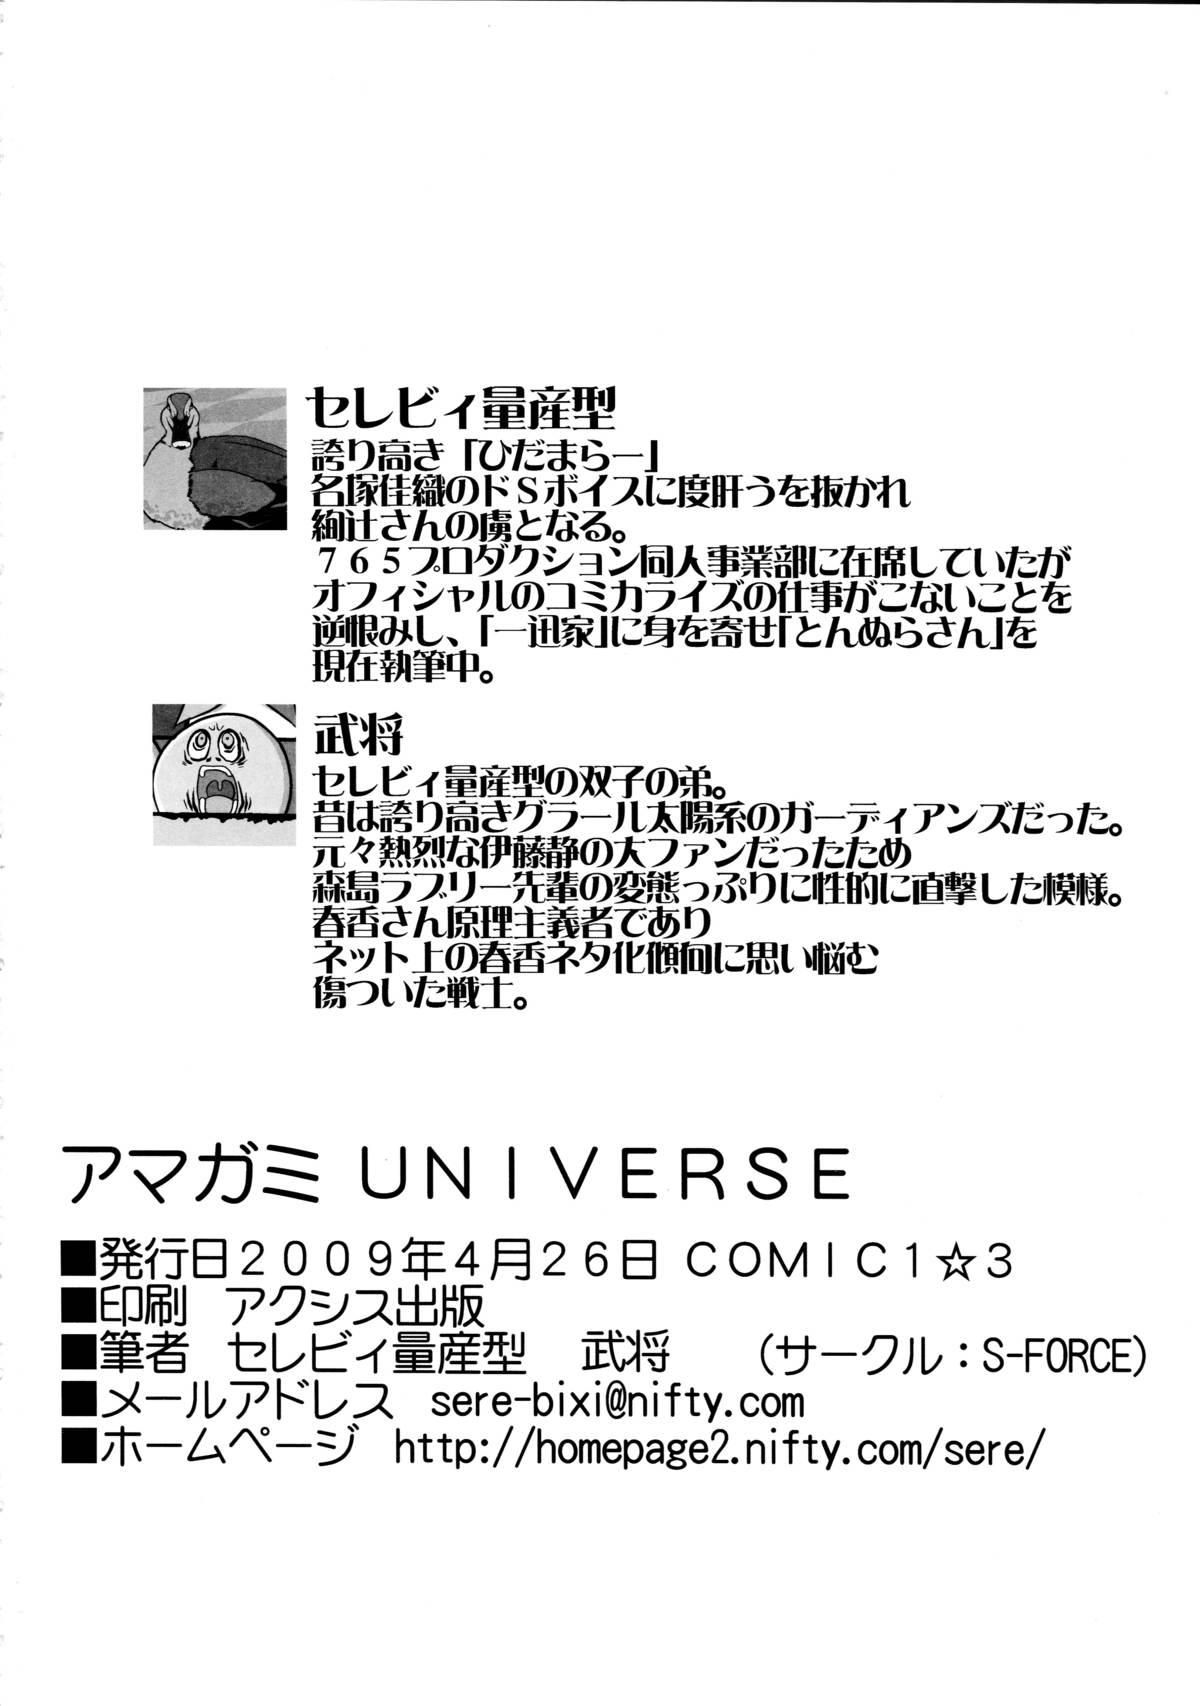 Sofa Amagami UNIVERSE - Amagami Stream - Page 50